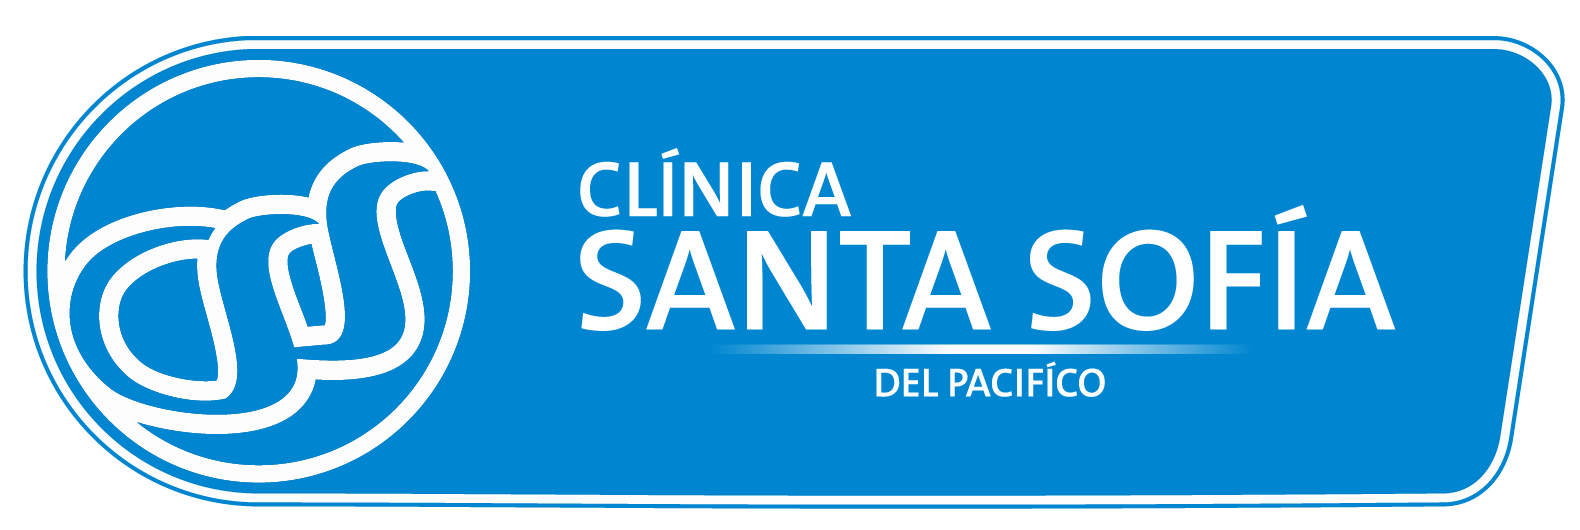 Clinica Santa Sofía del Pacífico